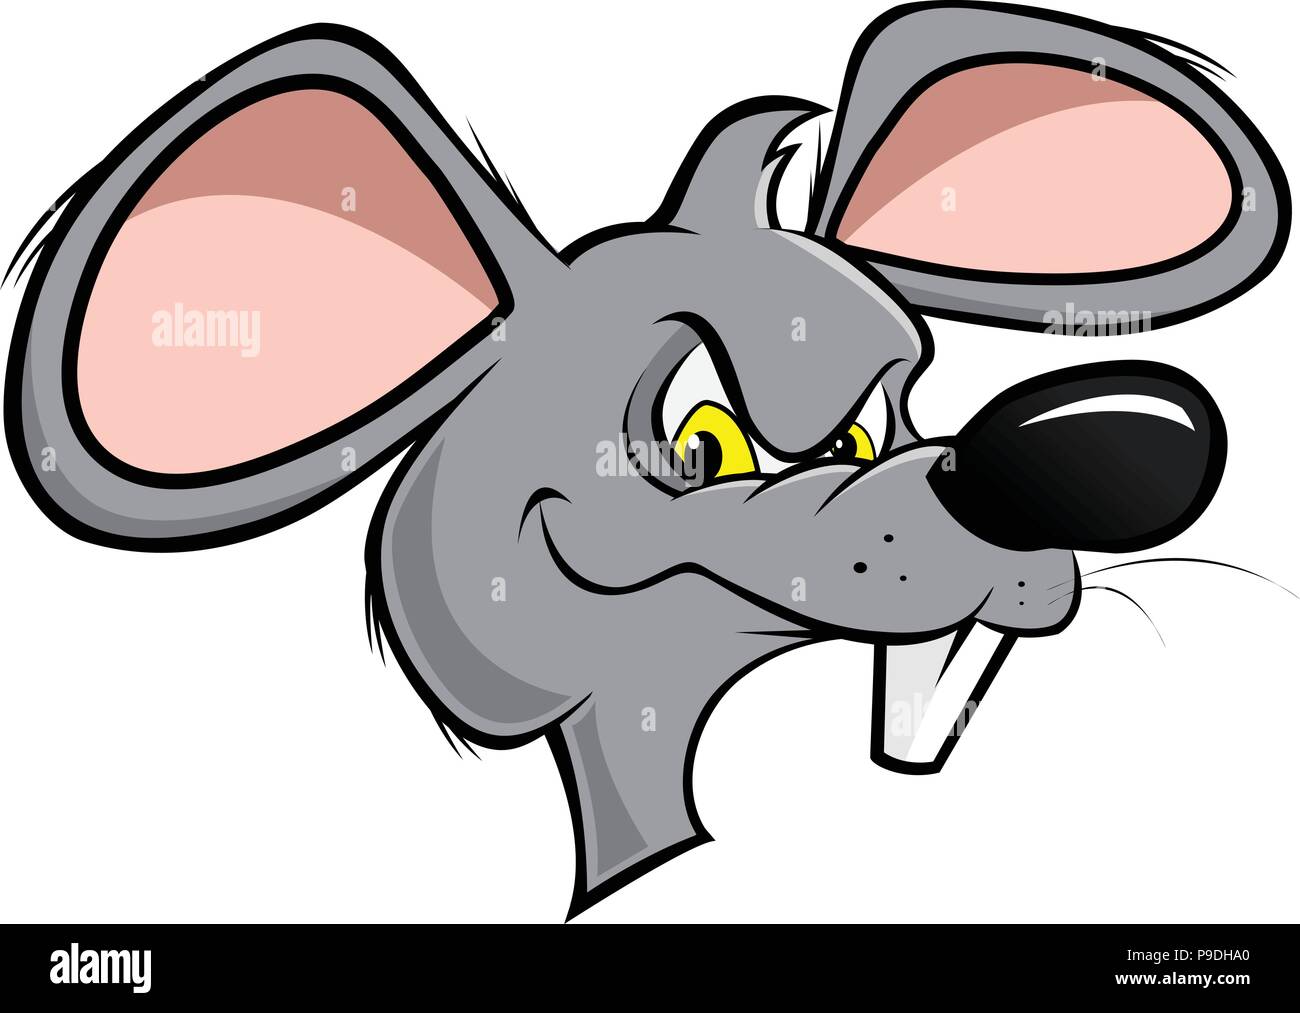 cartoon vector illustration of a rat face Stock Vector